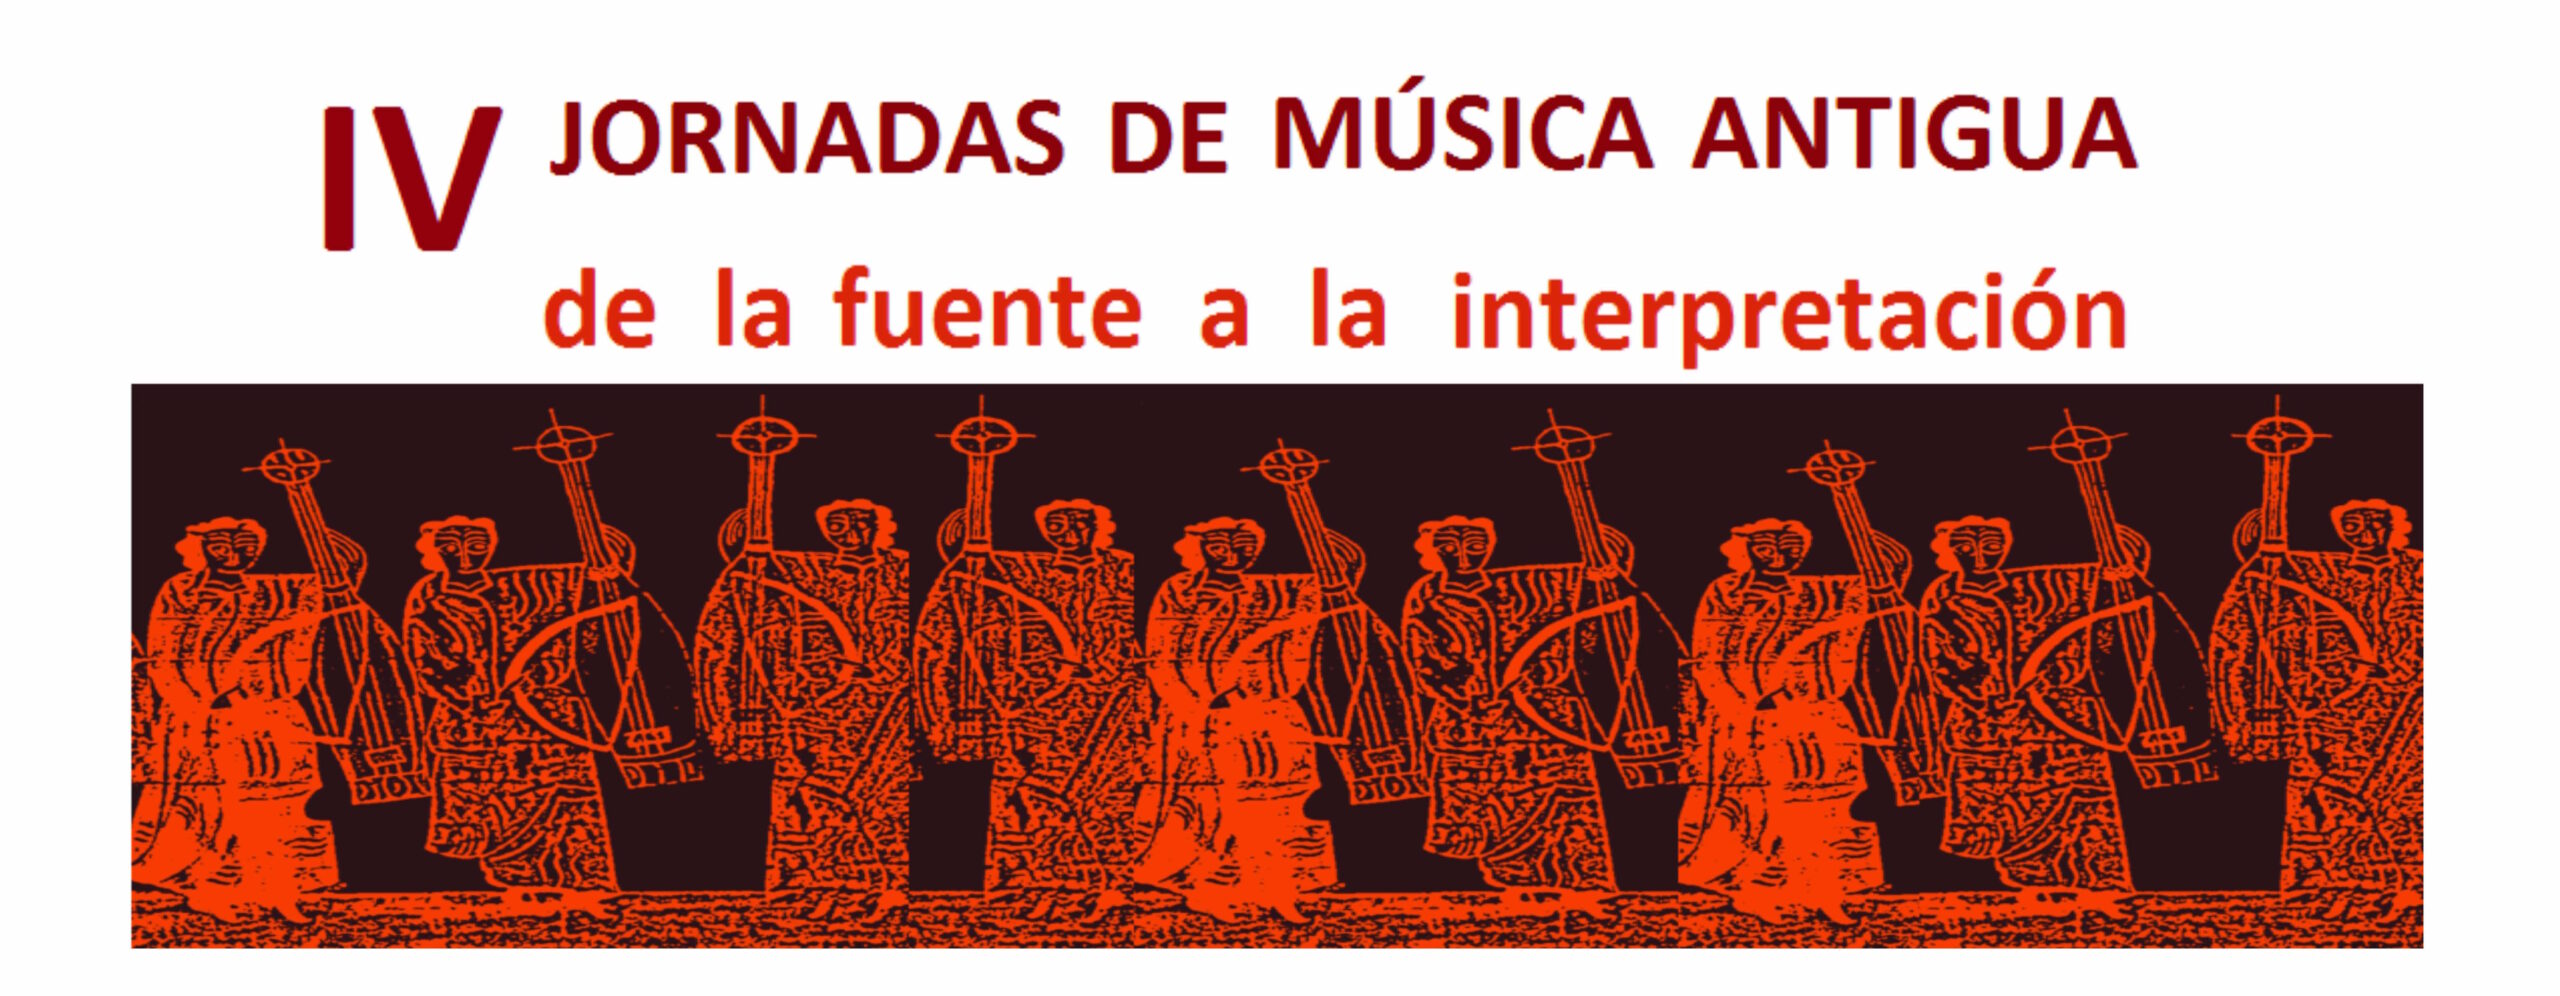 Jornadas IV de Música Antigua. De la fuente a la interpretación